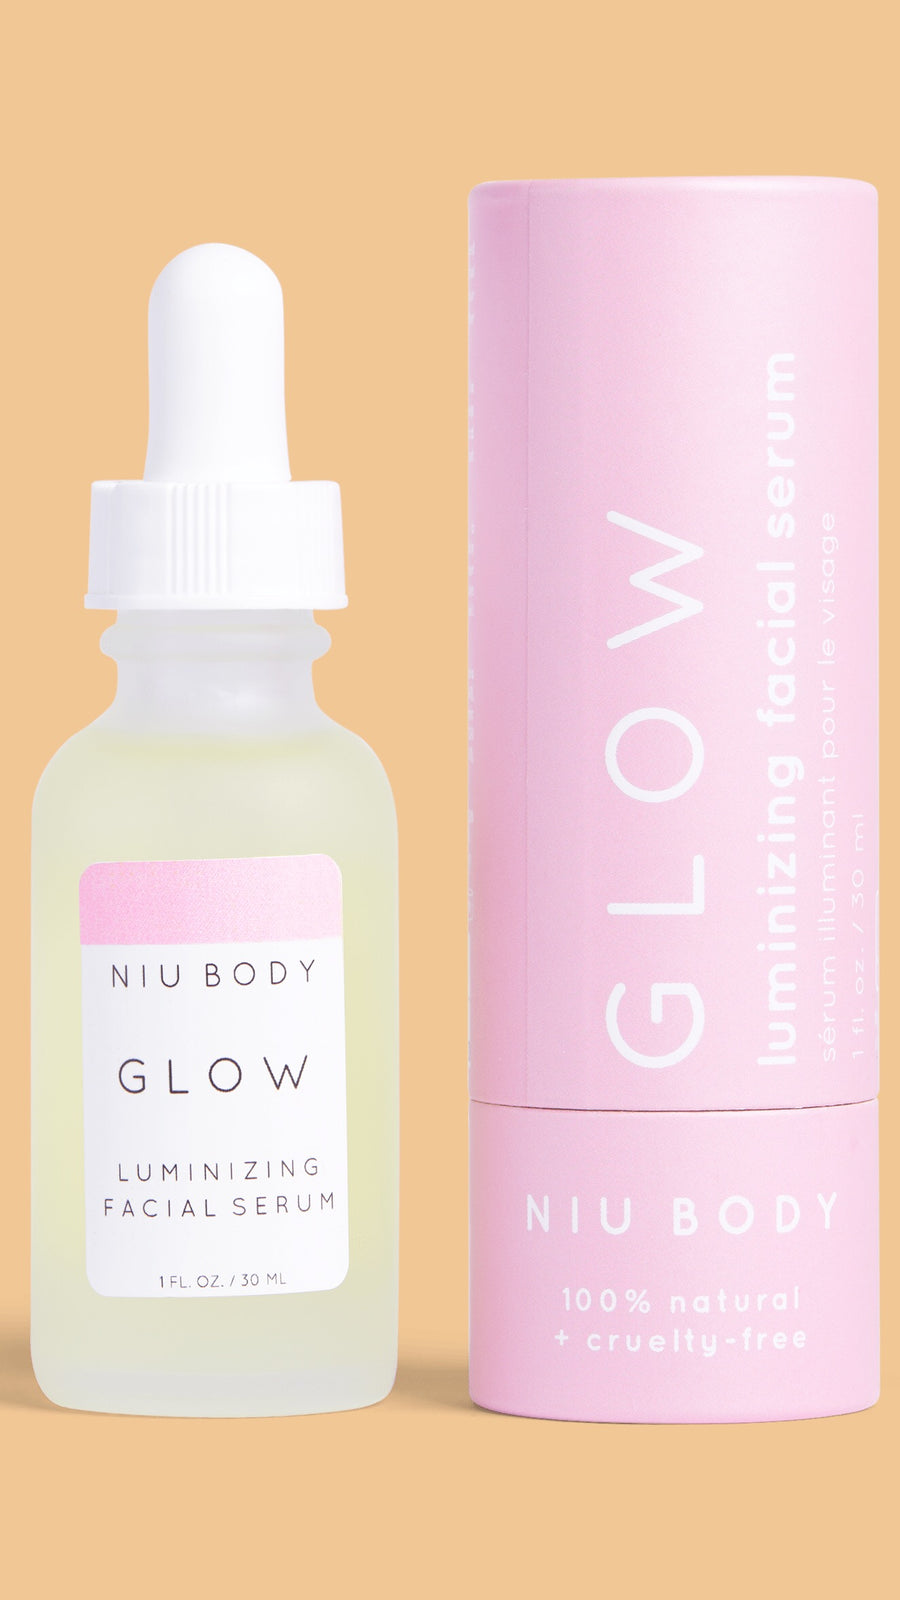 NIU Body Glow Luminizing Facial Serum